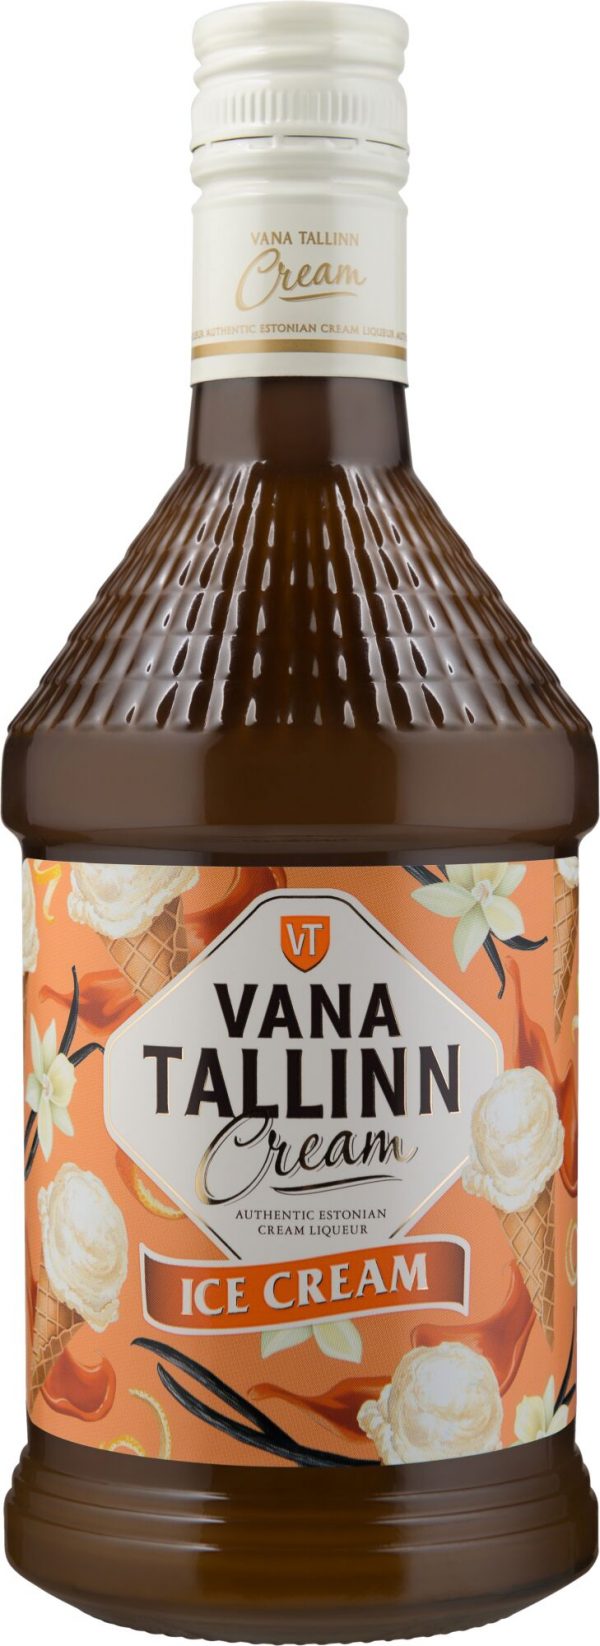 Vana Tallinn Cream Ice Cream